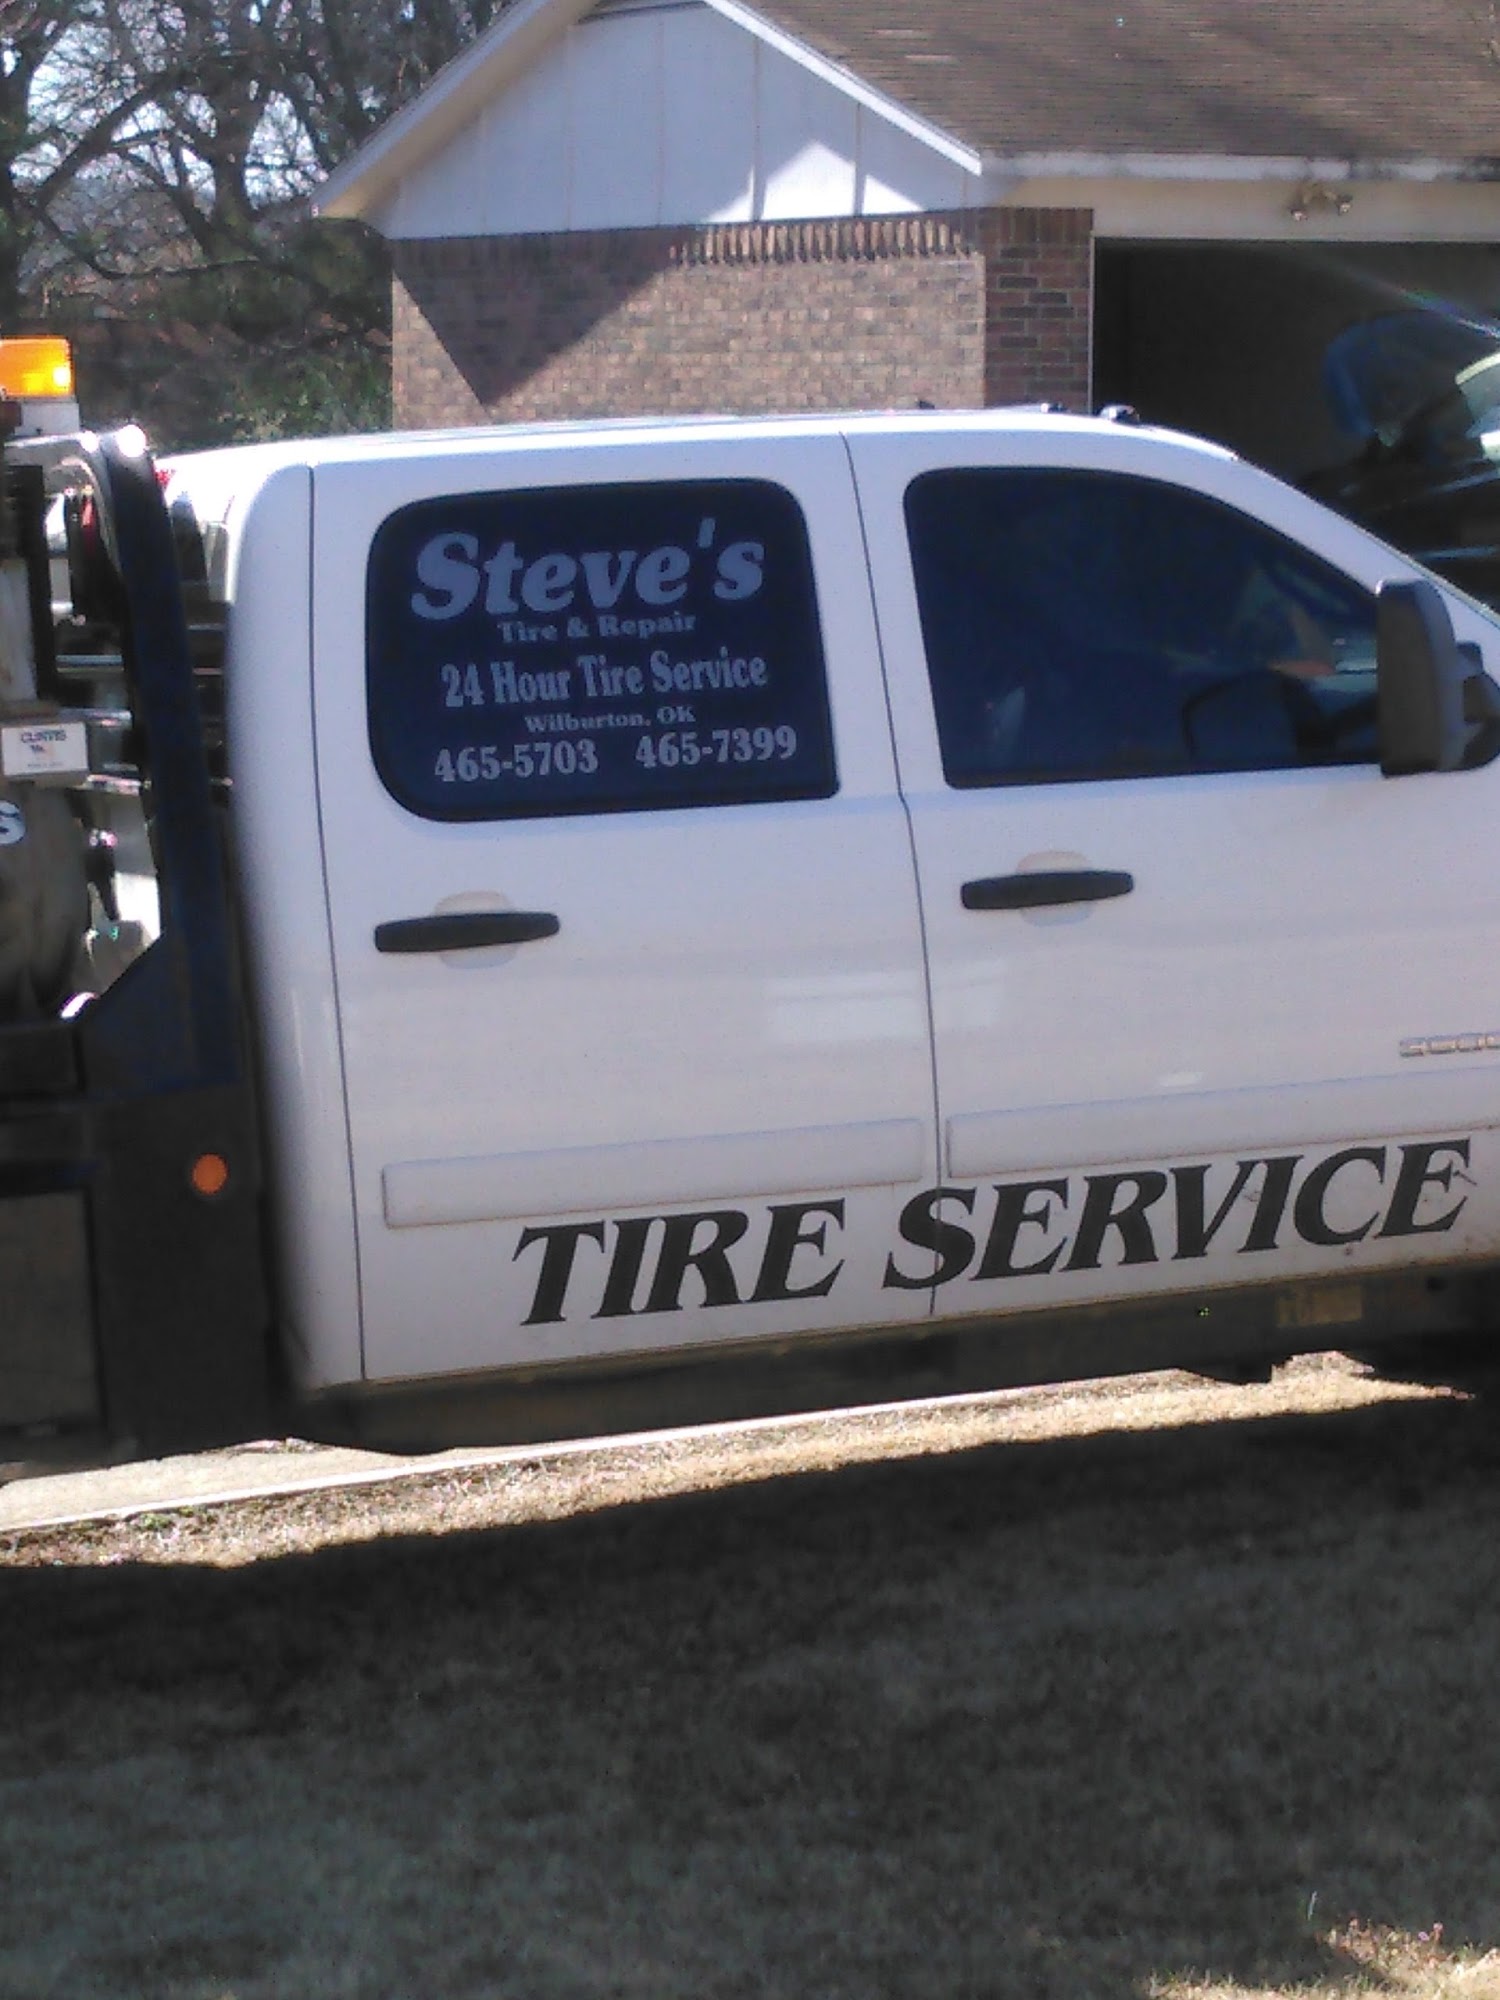 Steve's Tire & Repair